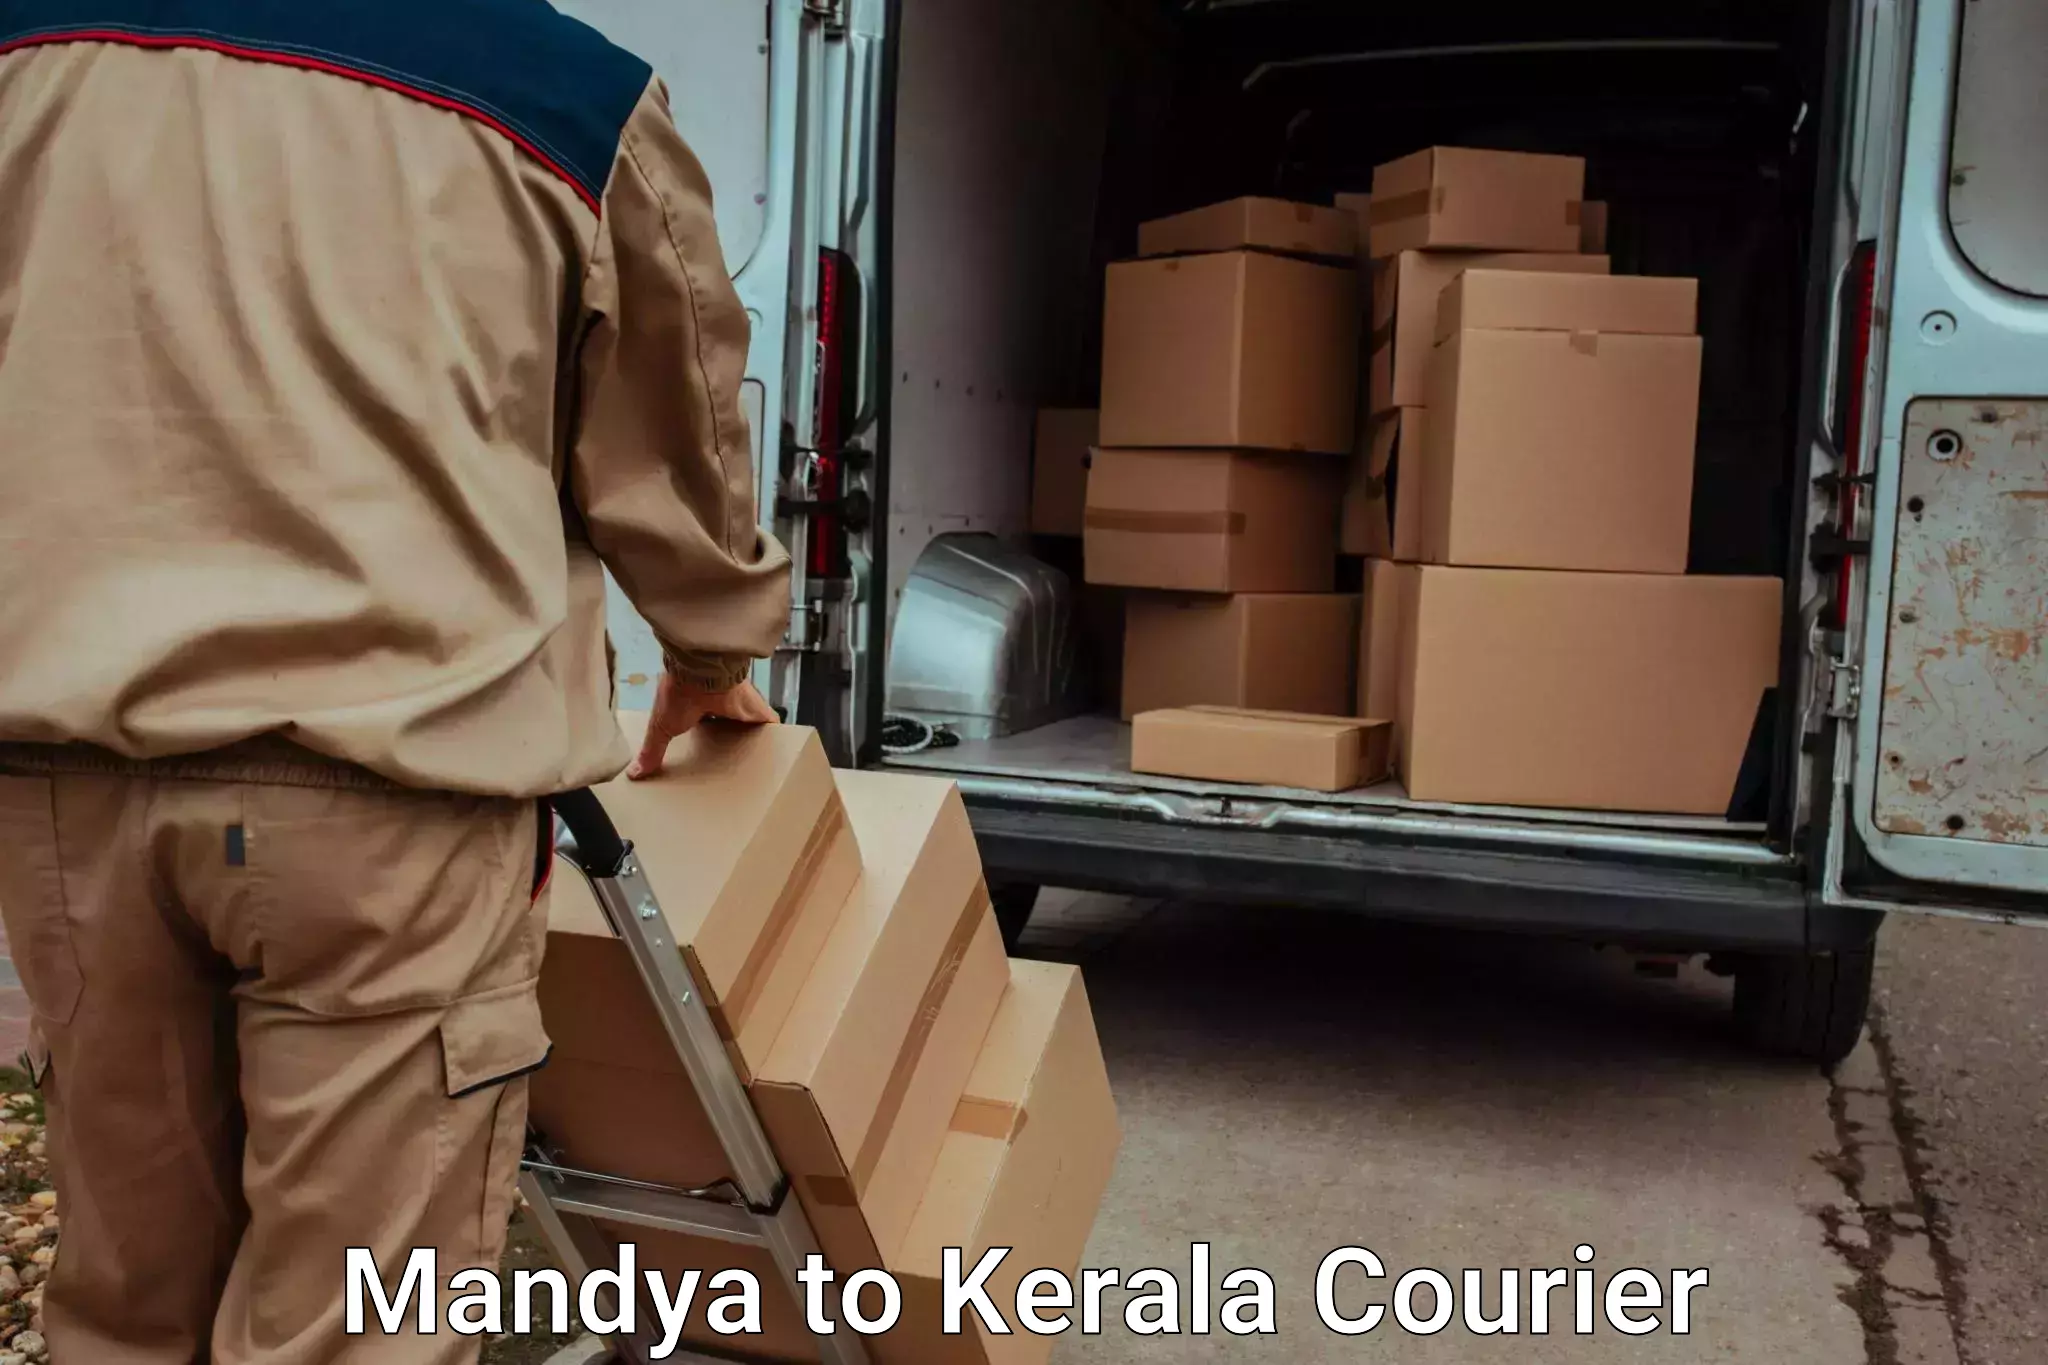 Luggage transport company Mandya to Koothattukulam